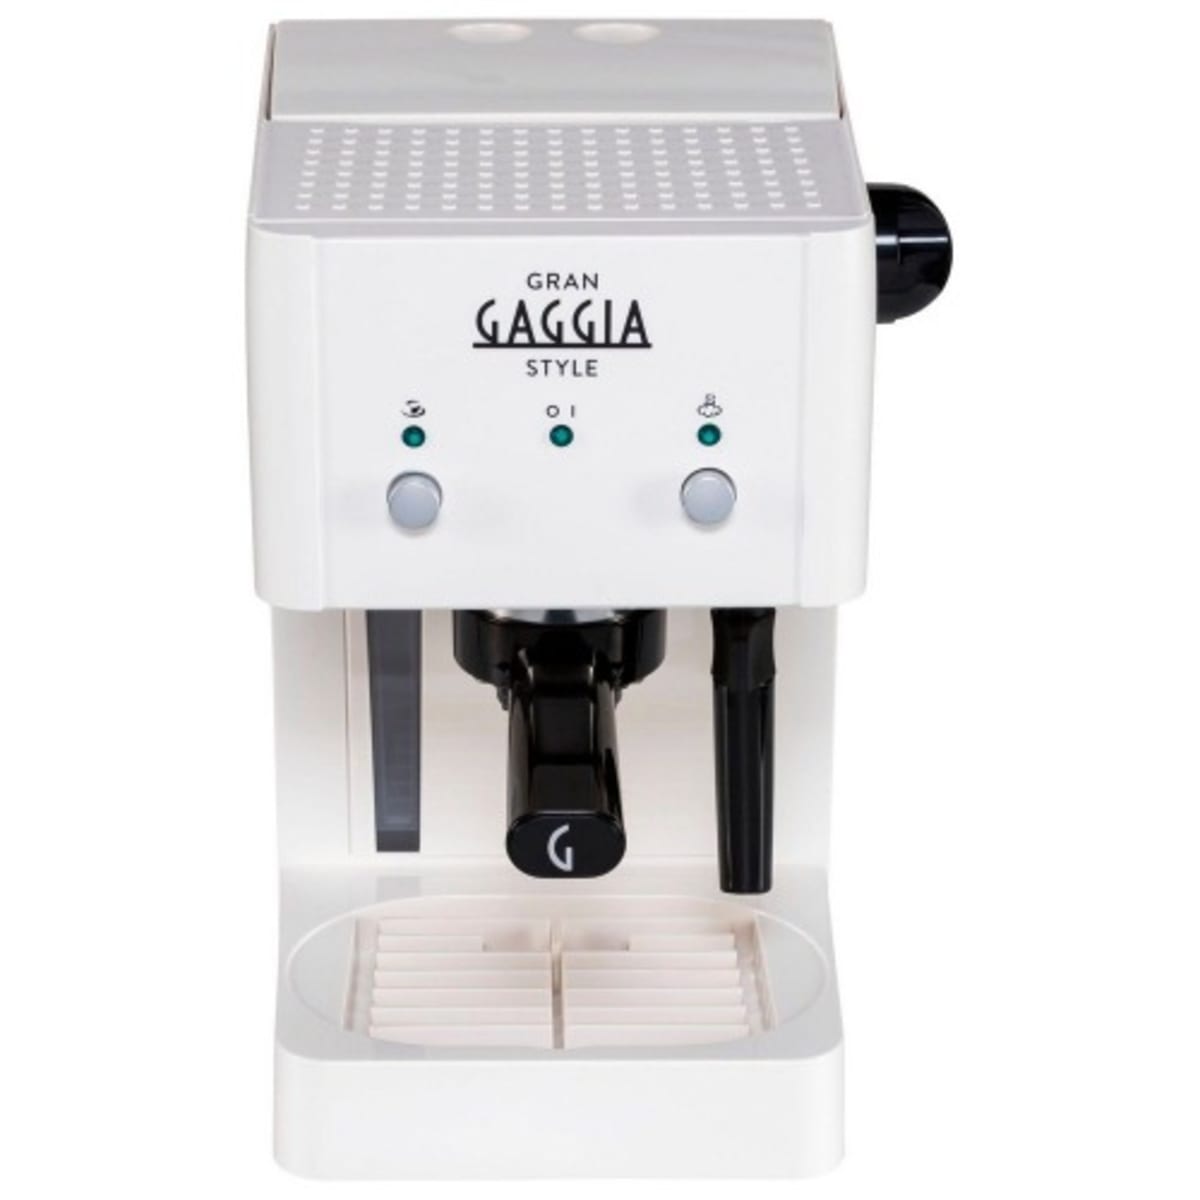 Gaggia, Gran Style, Pump Manual Espresso and Coffee Machine